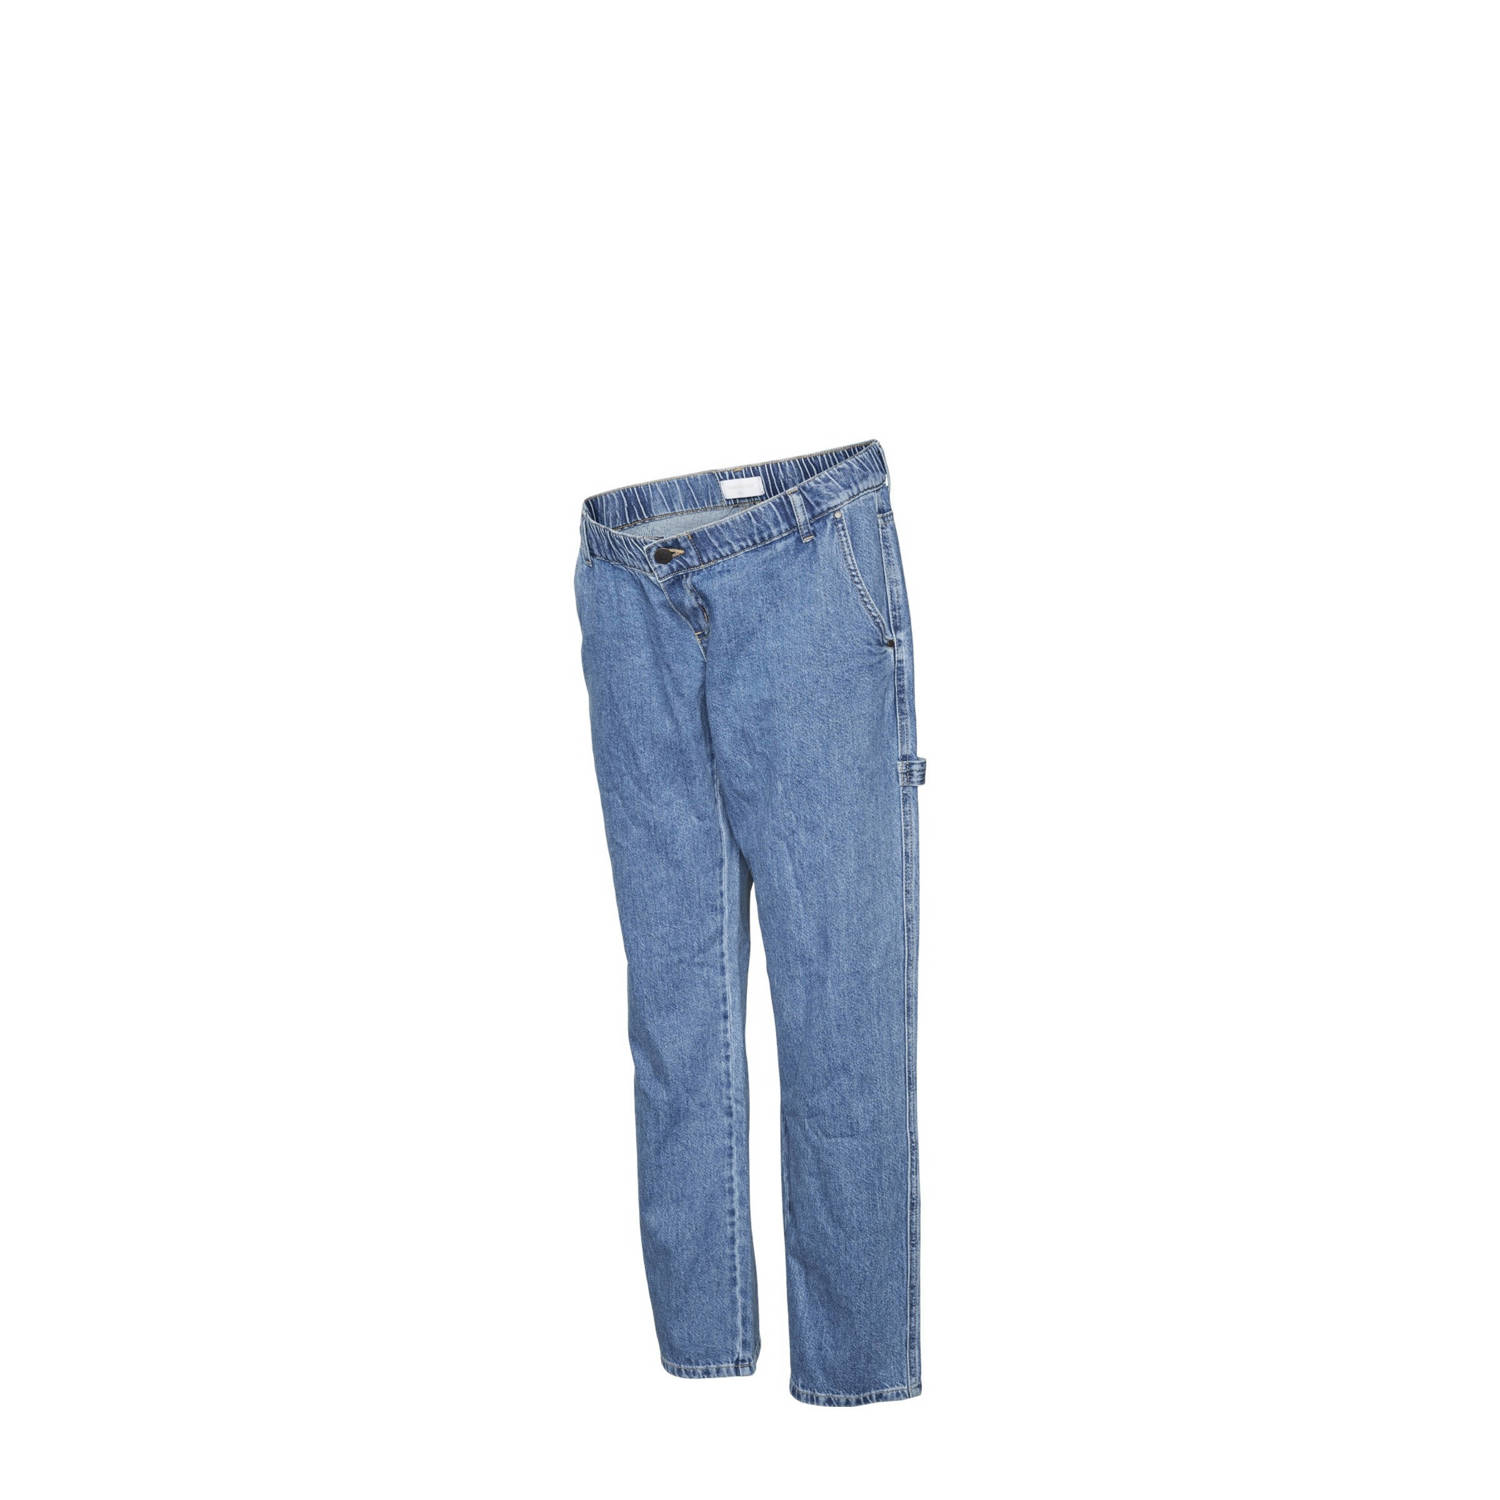 Mamalicious zwangerschaps straight jeans MLKYOTO medium blue denim Blauw 28-32